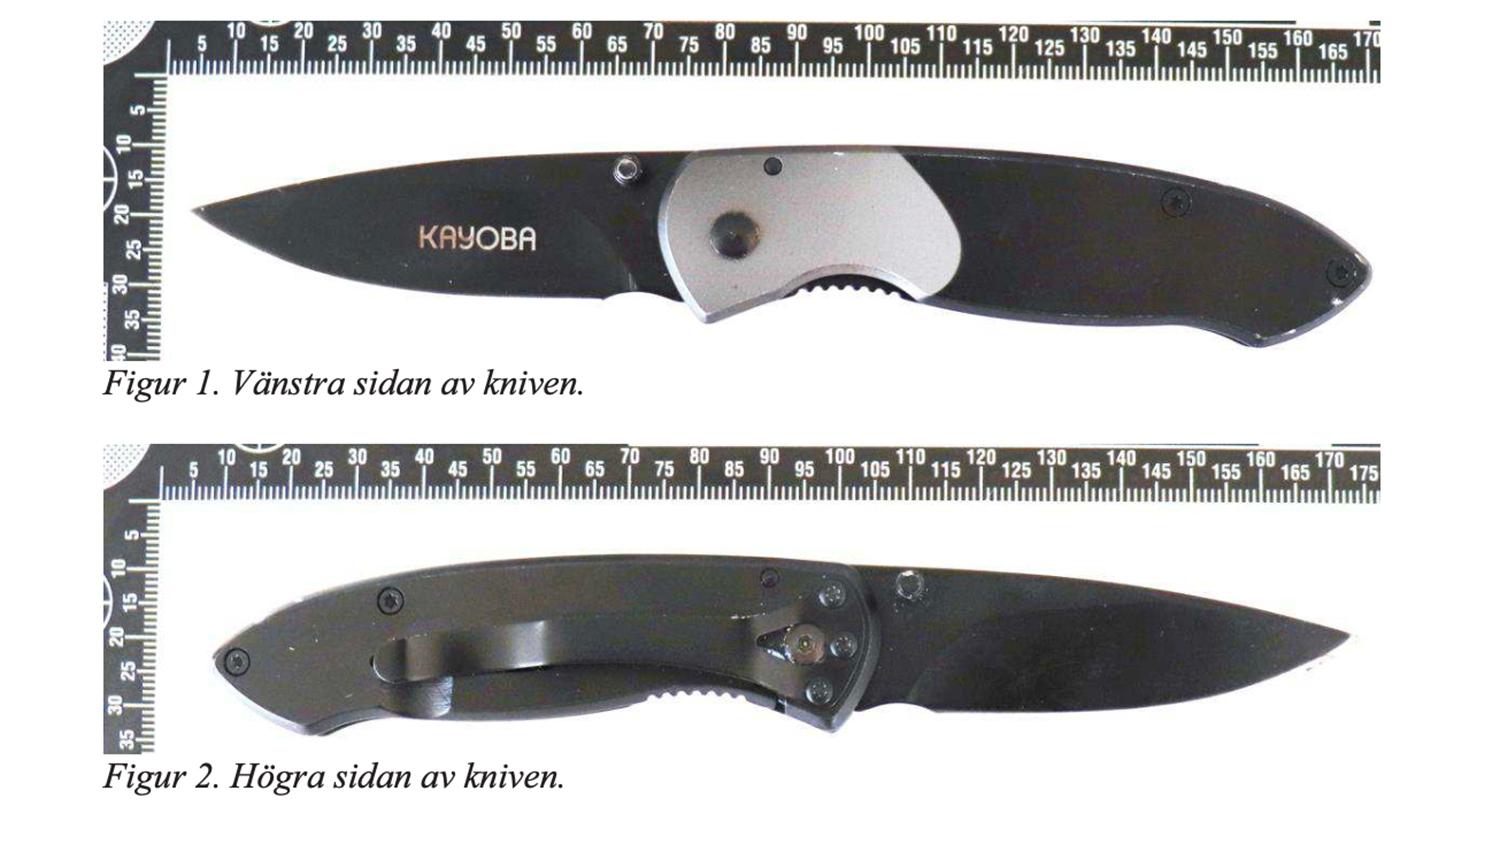 Kniven var av märket Kayoba och påträffades i utfällt läge på asfalten i närheten av attacken vid Hälla parkering i Västerås. Bild från förundersökningen.